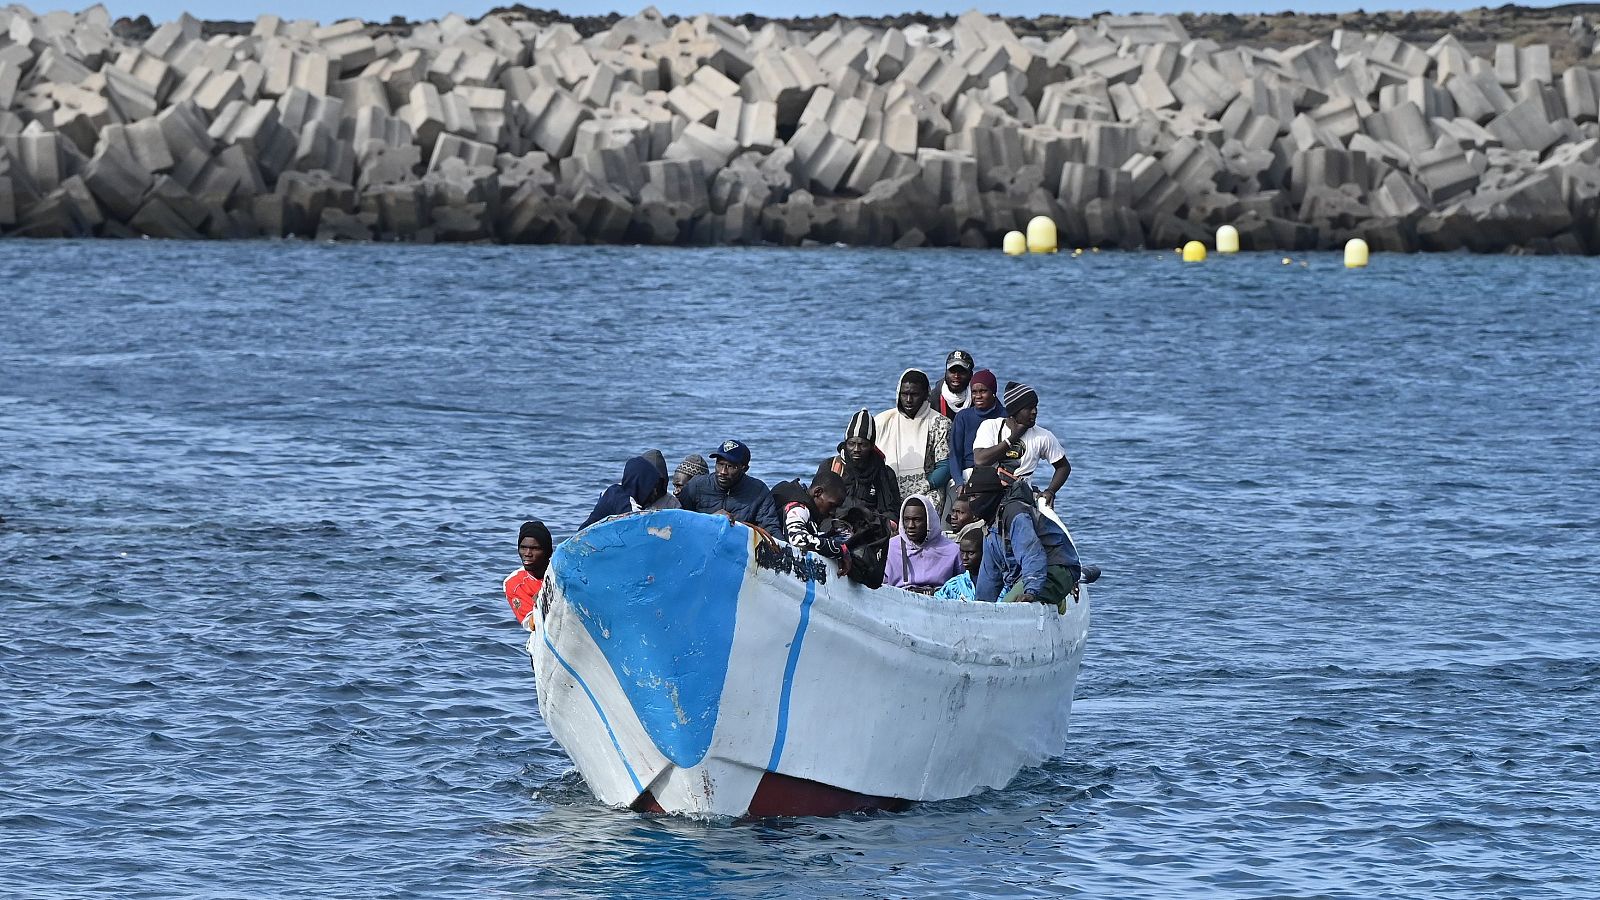 Crisis migratoria en Canarias: "Es fundamental la fluidez a la hora de atender y descongestionar las islas"